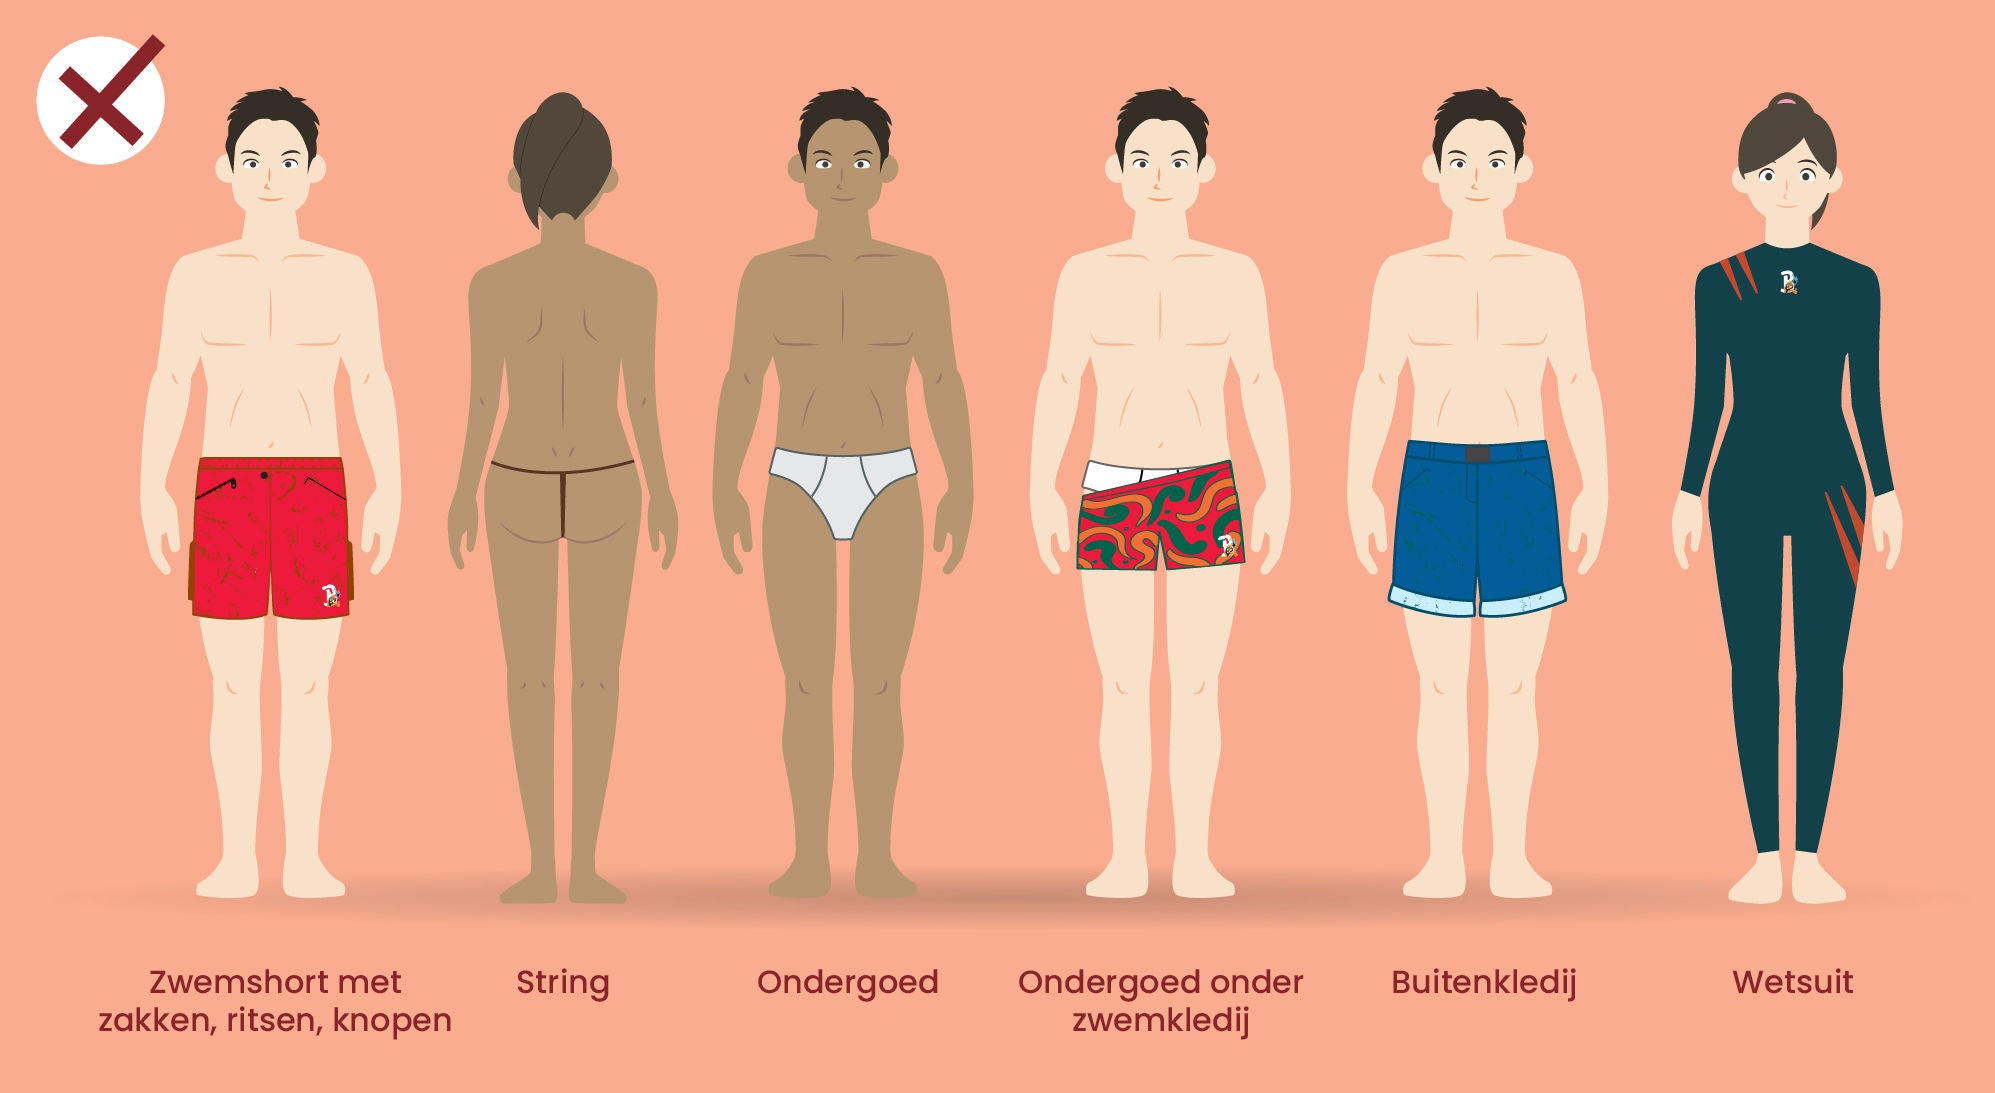 Niet toegelaten badkleding: zwemshort met zakken, ritsen en knopen, string, ondergoed, ondergoed onder zwemkledij, buitenkledij, wetsuit.